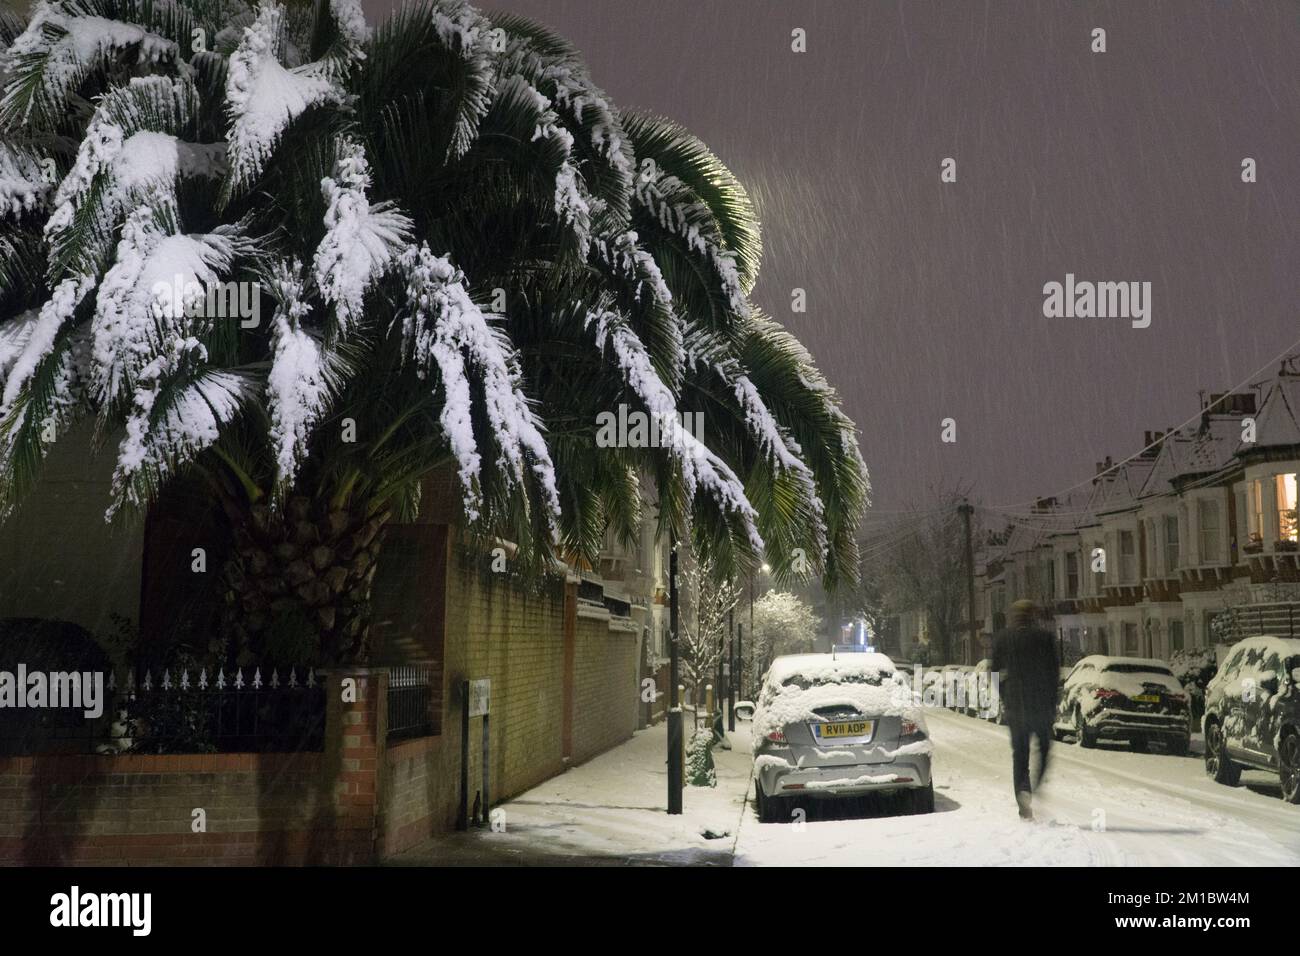 Wetter im Vereinigten Königreich, London, 11. Dezember 2022: Am Sonntagabend fielen fünf Zentimeter Schnee auf London, während sie in einem malerischen Winterwunderland in einem Vorort von Clapham Bäume, Fahrzeuge und Straßen drehten. Am Montagmorgen wird mit Reiseunterbrechungen gerechnet. Anna Watson/Alamy Live News Stockfoto